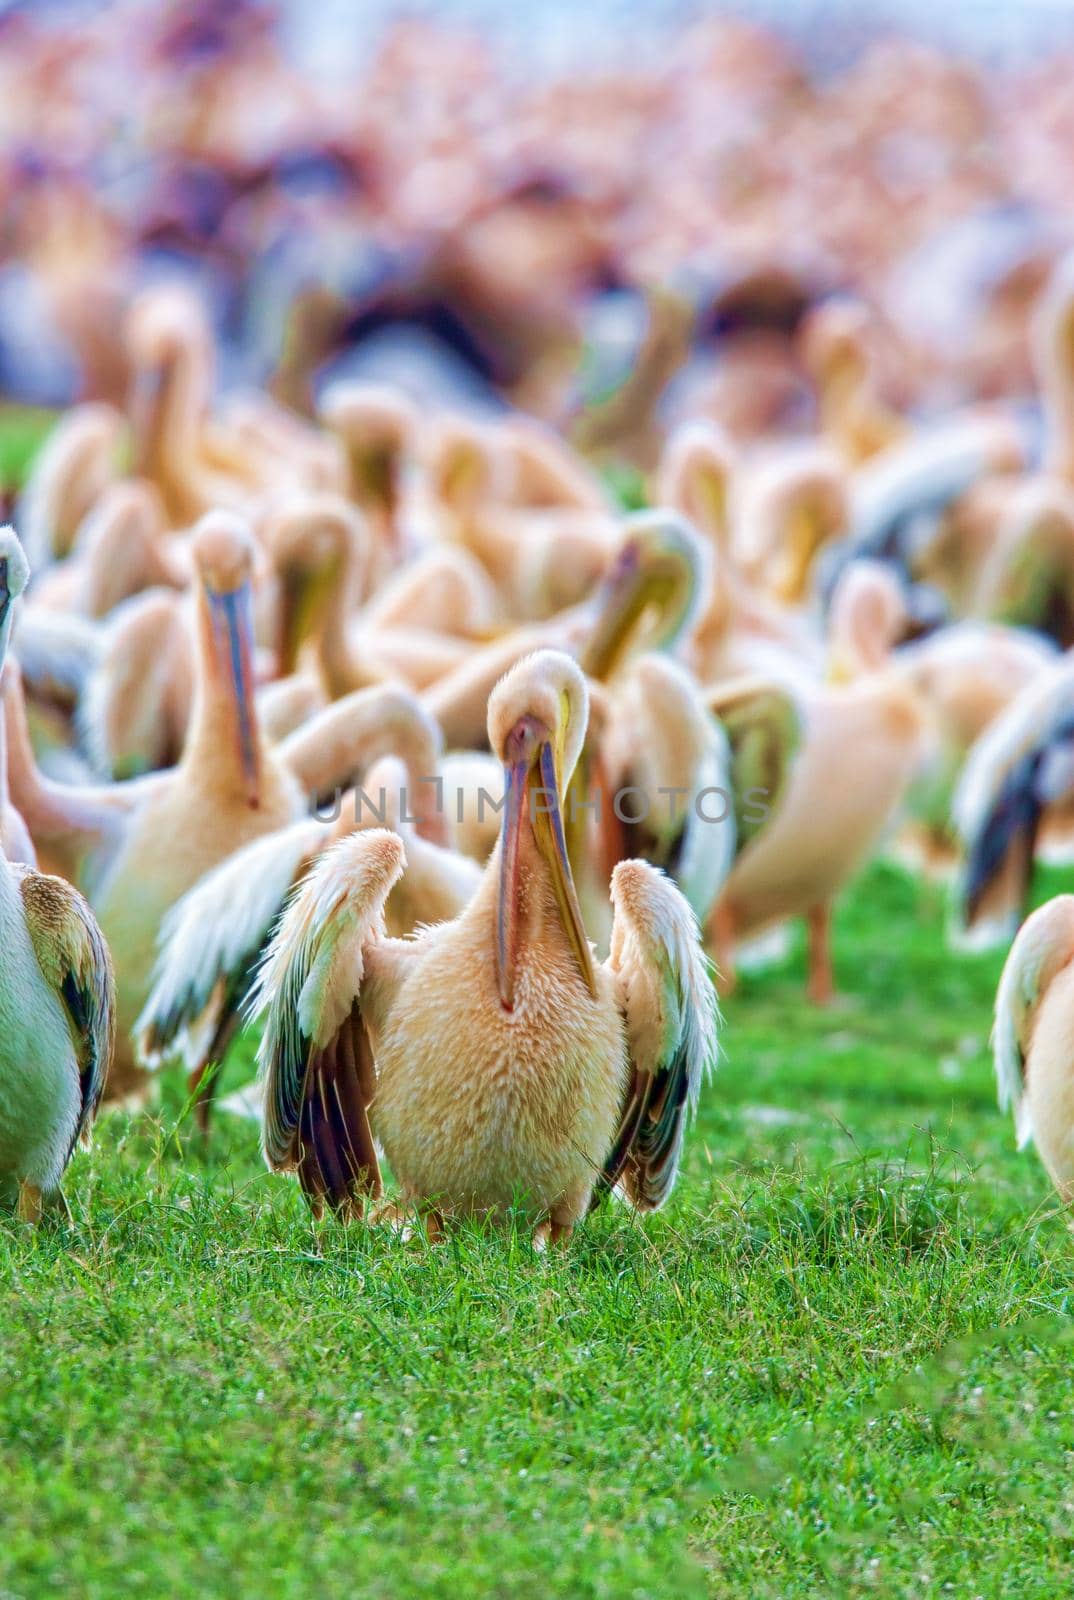 A flock of pelicans in the national park Nakuru, Kenya, wildlife.